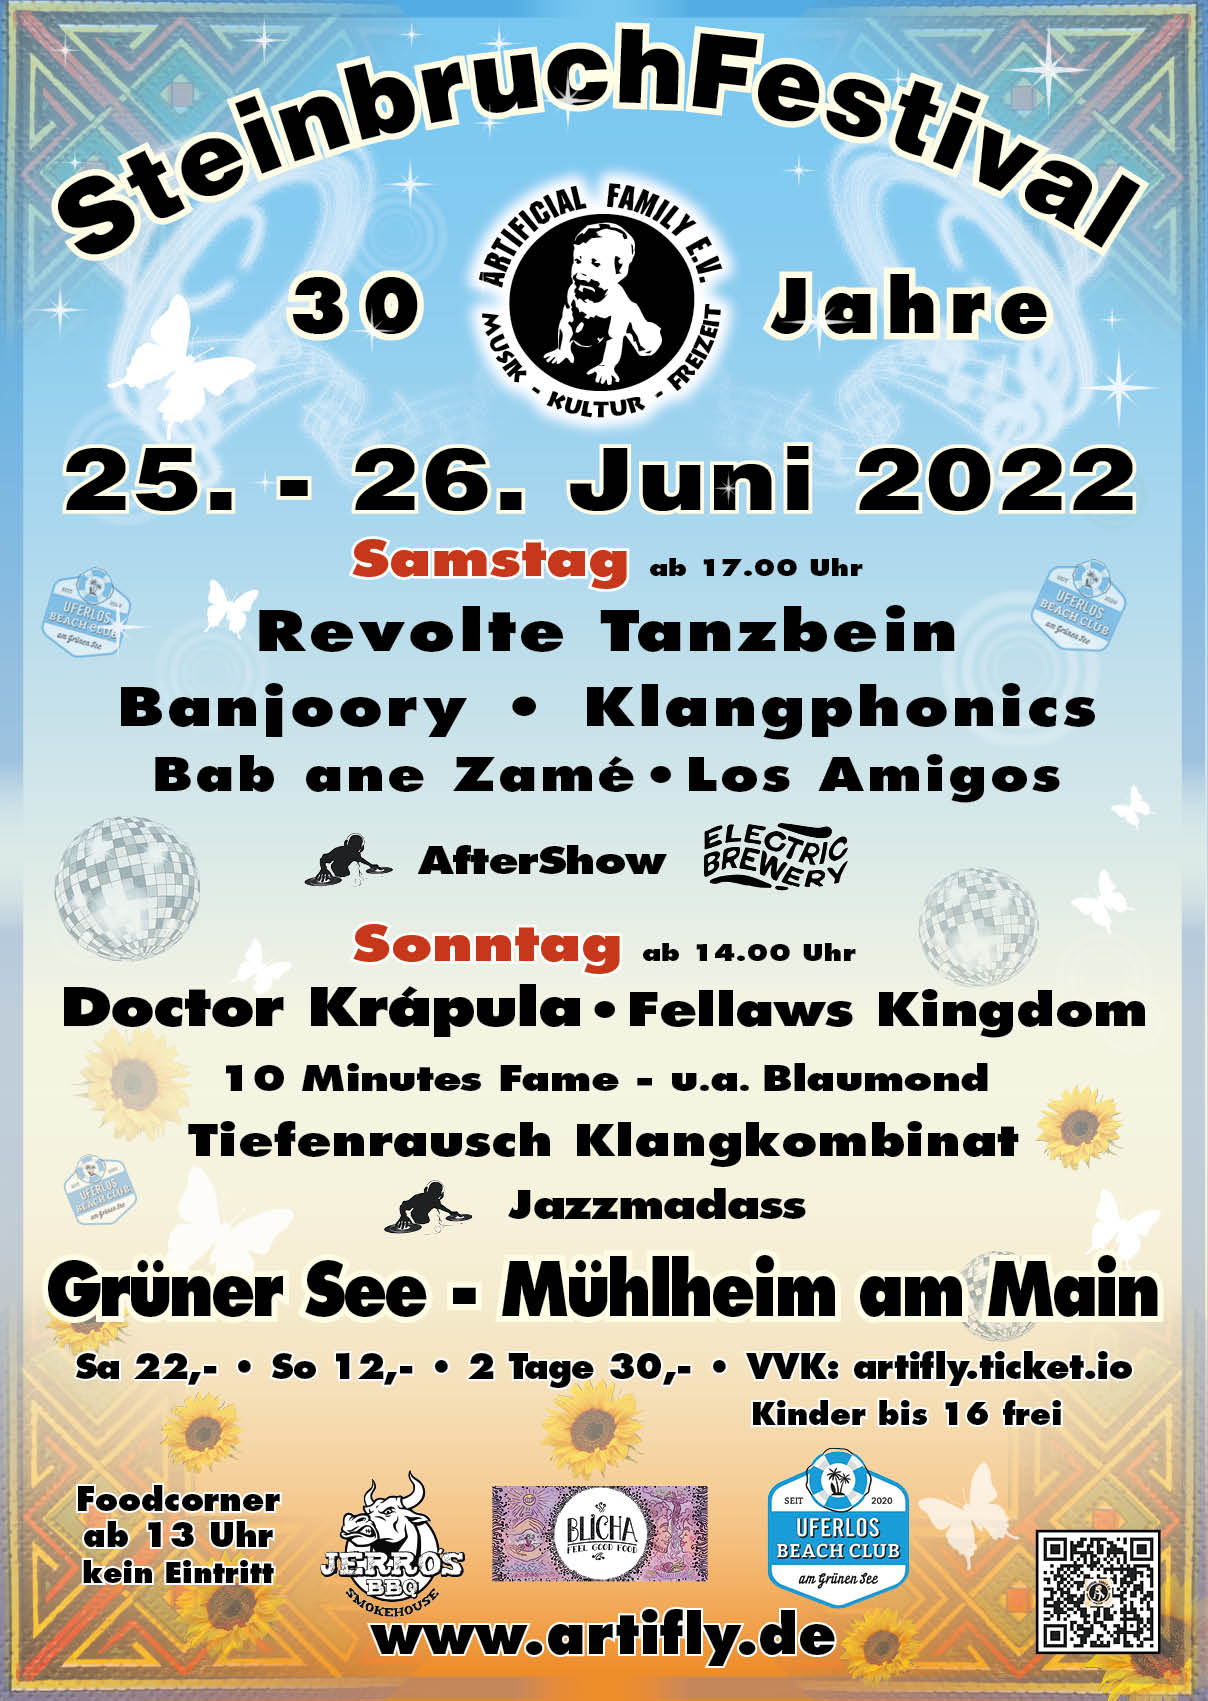 28. Steinbruchfestival 2022